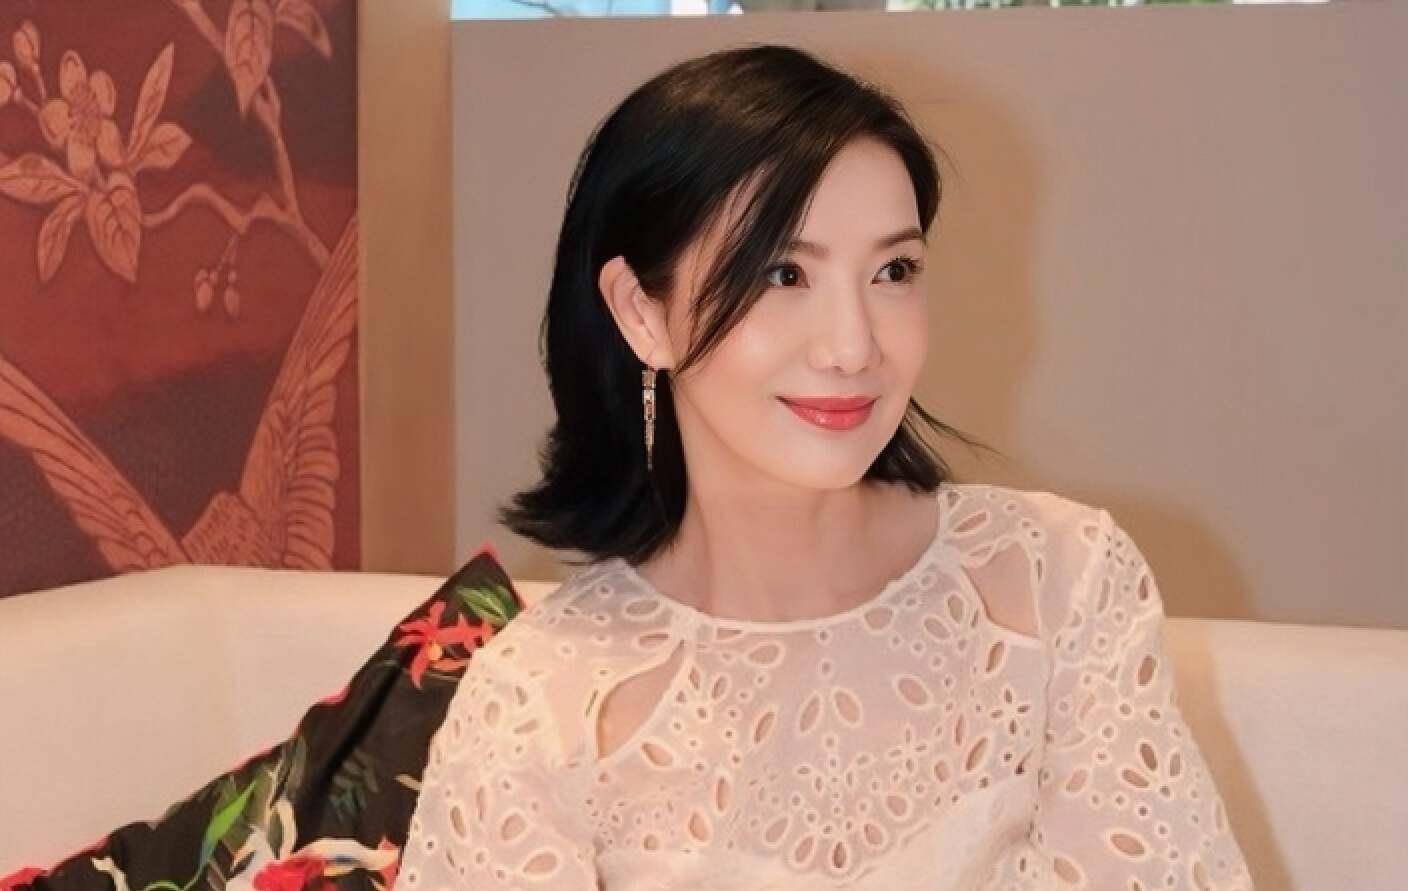 突发!香港女星突然宣布离婚,与小7岁男演员秘密注册结婚多年